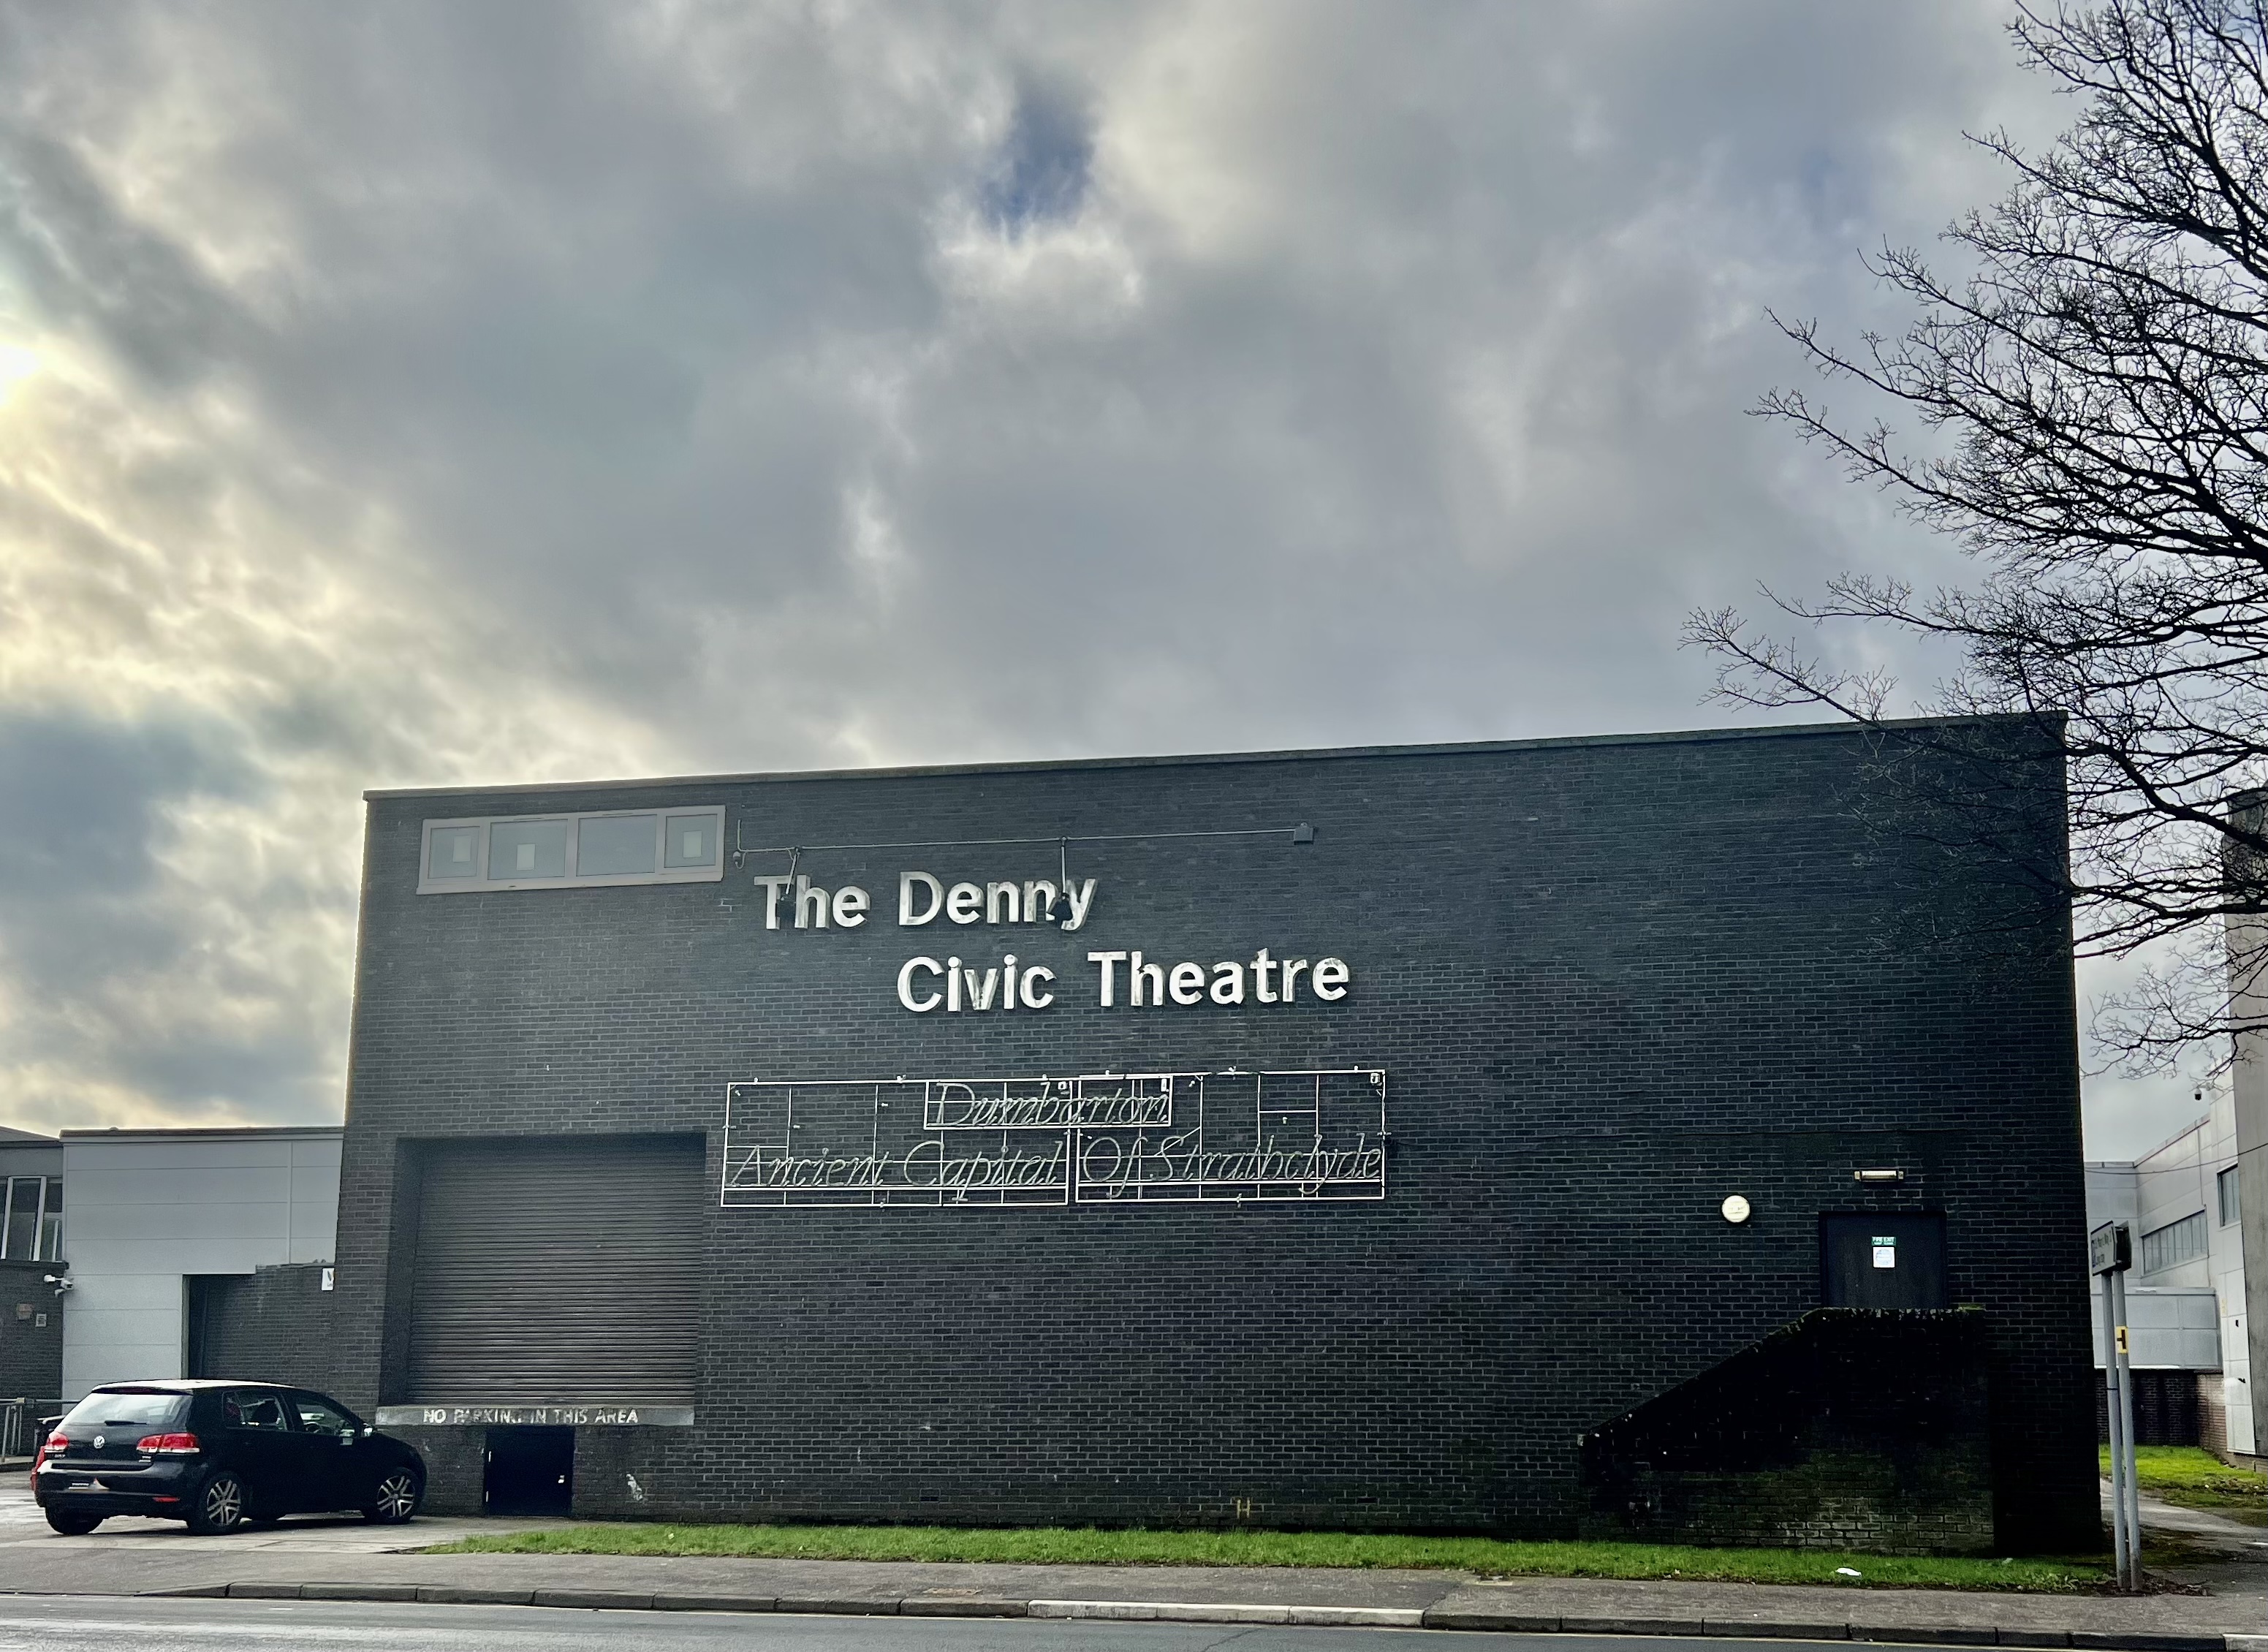 The Denny Civic Theatre